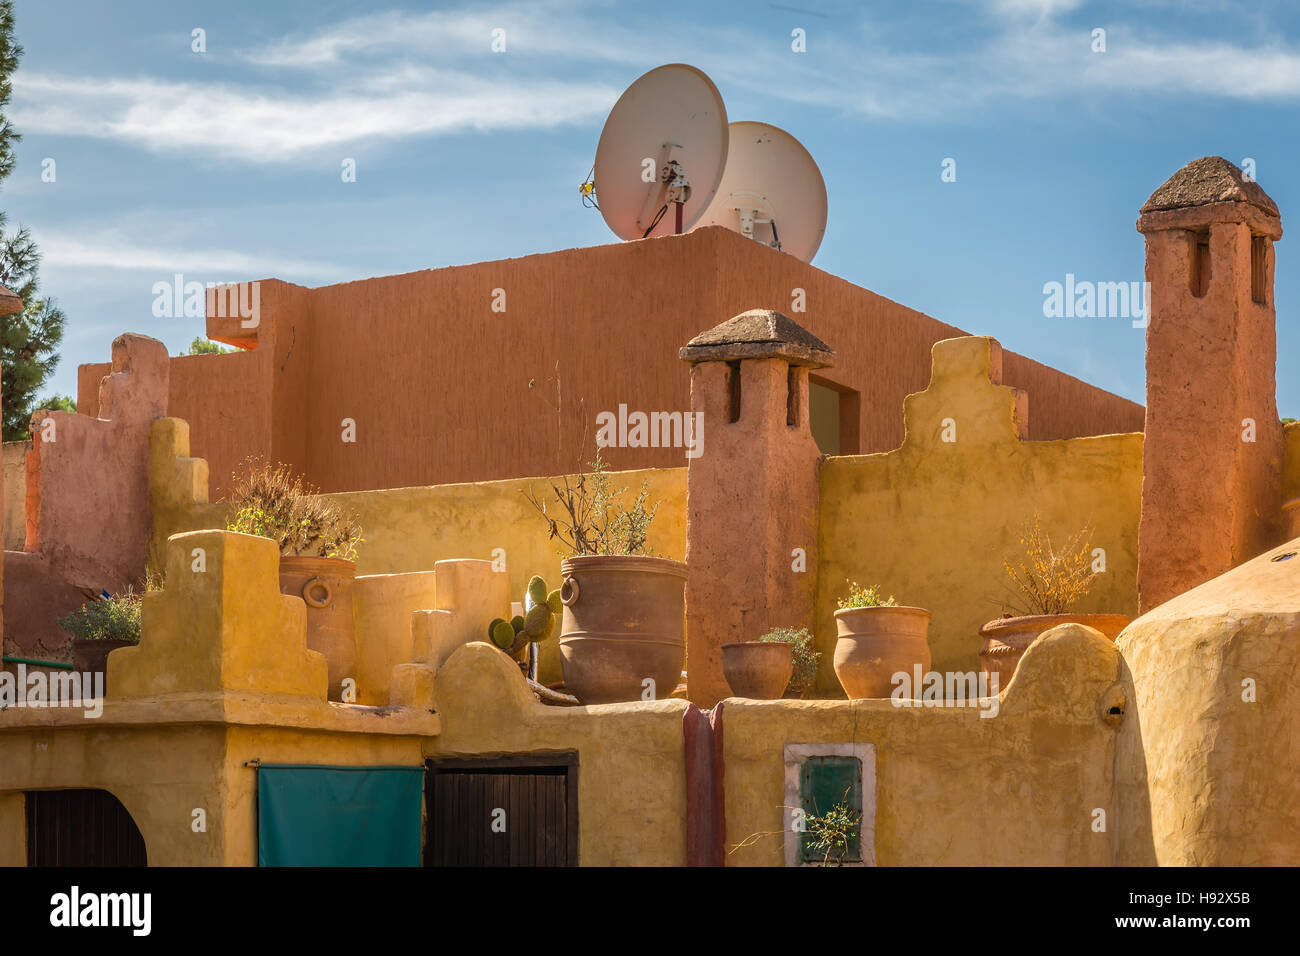 Le toit-terrasse maison typique marocaine par ozoud cascades. Banque D'Images